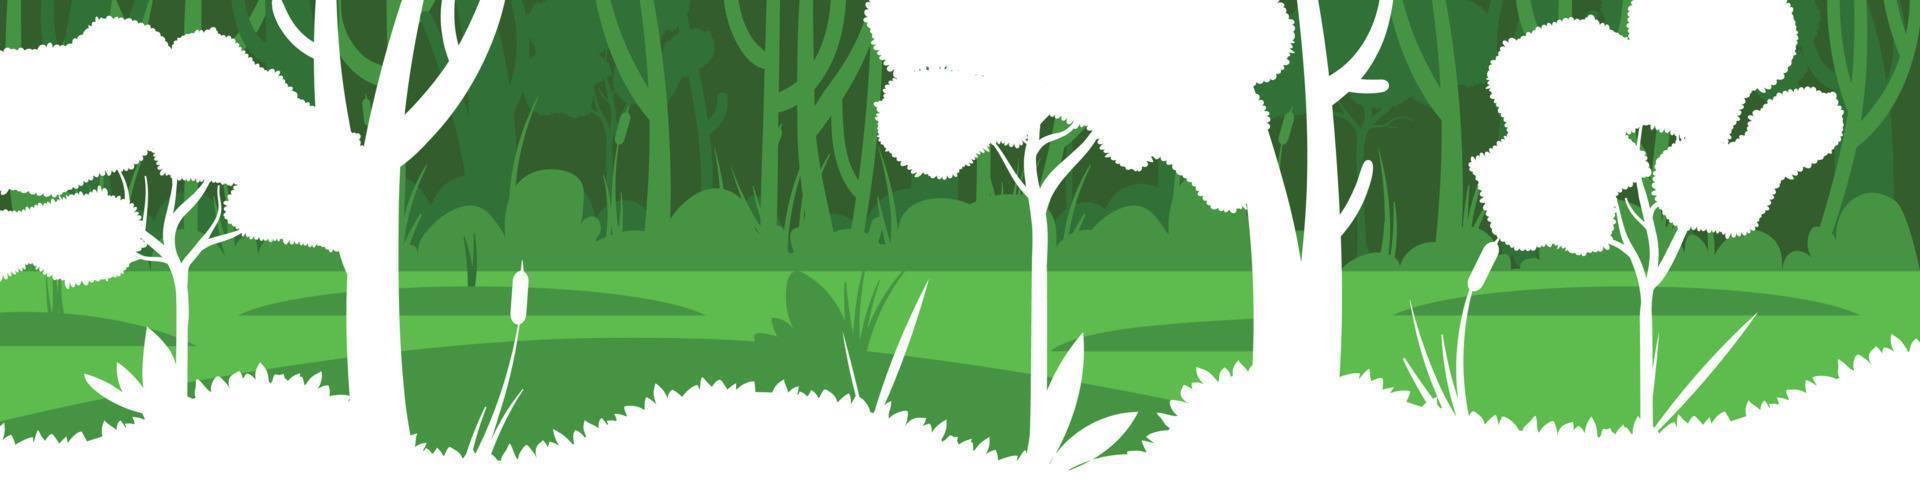 ilustración de escena vectorial de hermoso paisaje primaveral, árboles verdes en capas, color brillante, fondo de pantano en estilo de dibujos animados de papel de pancarta plana vector